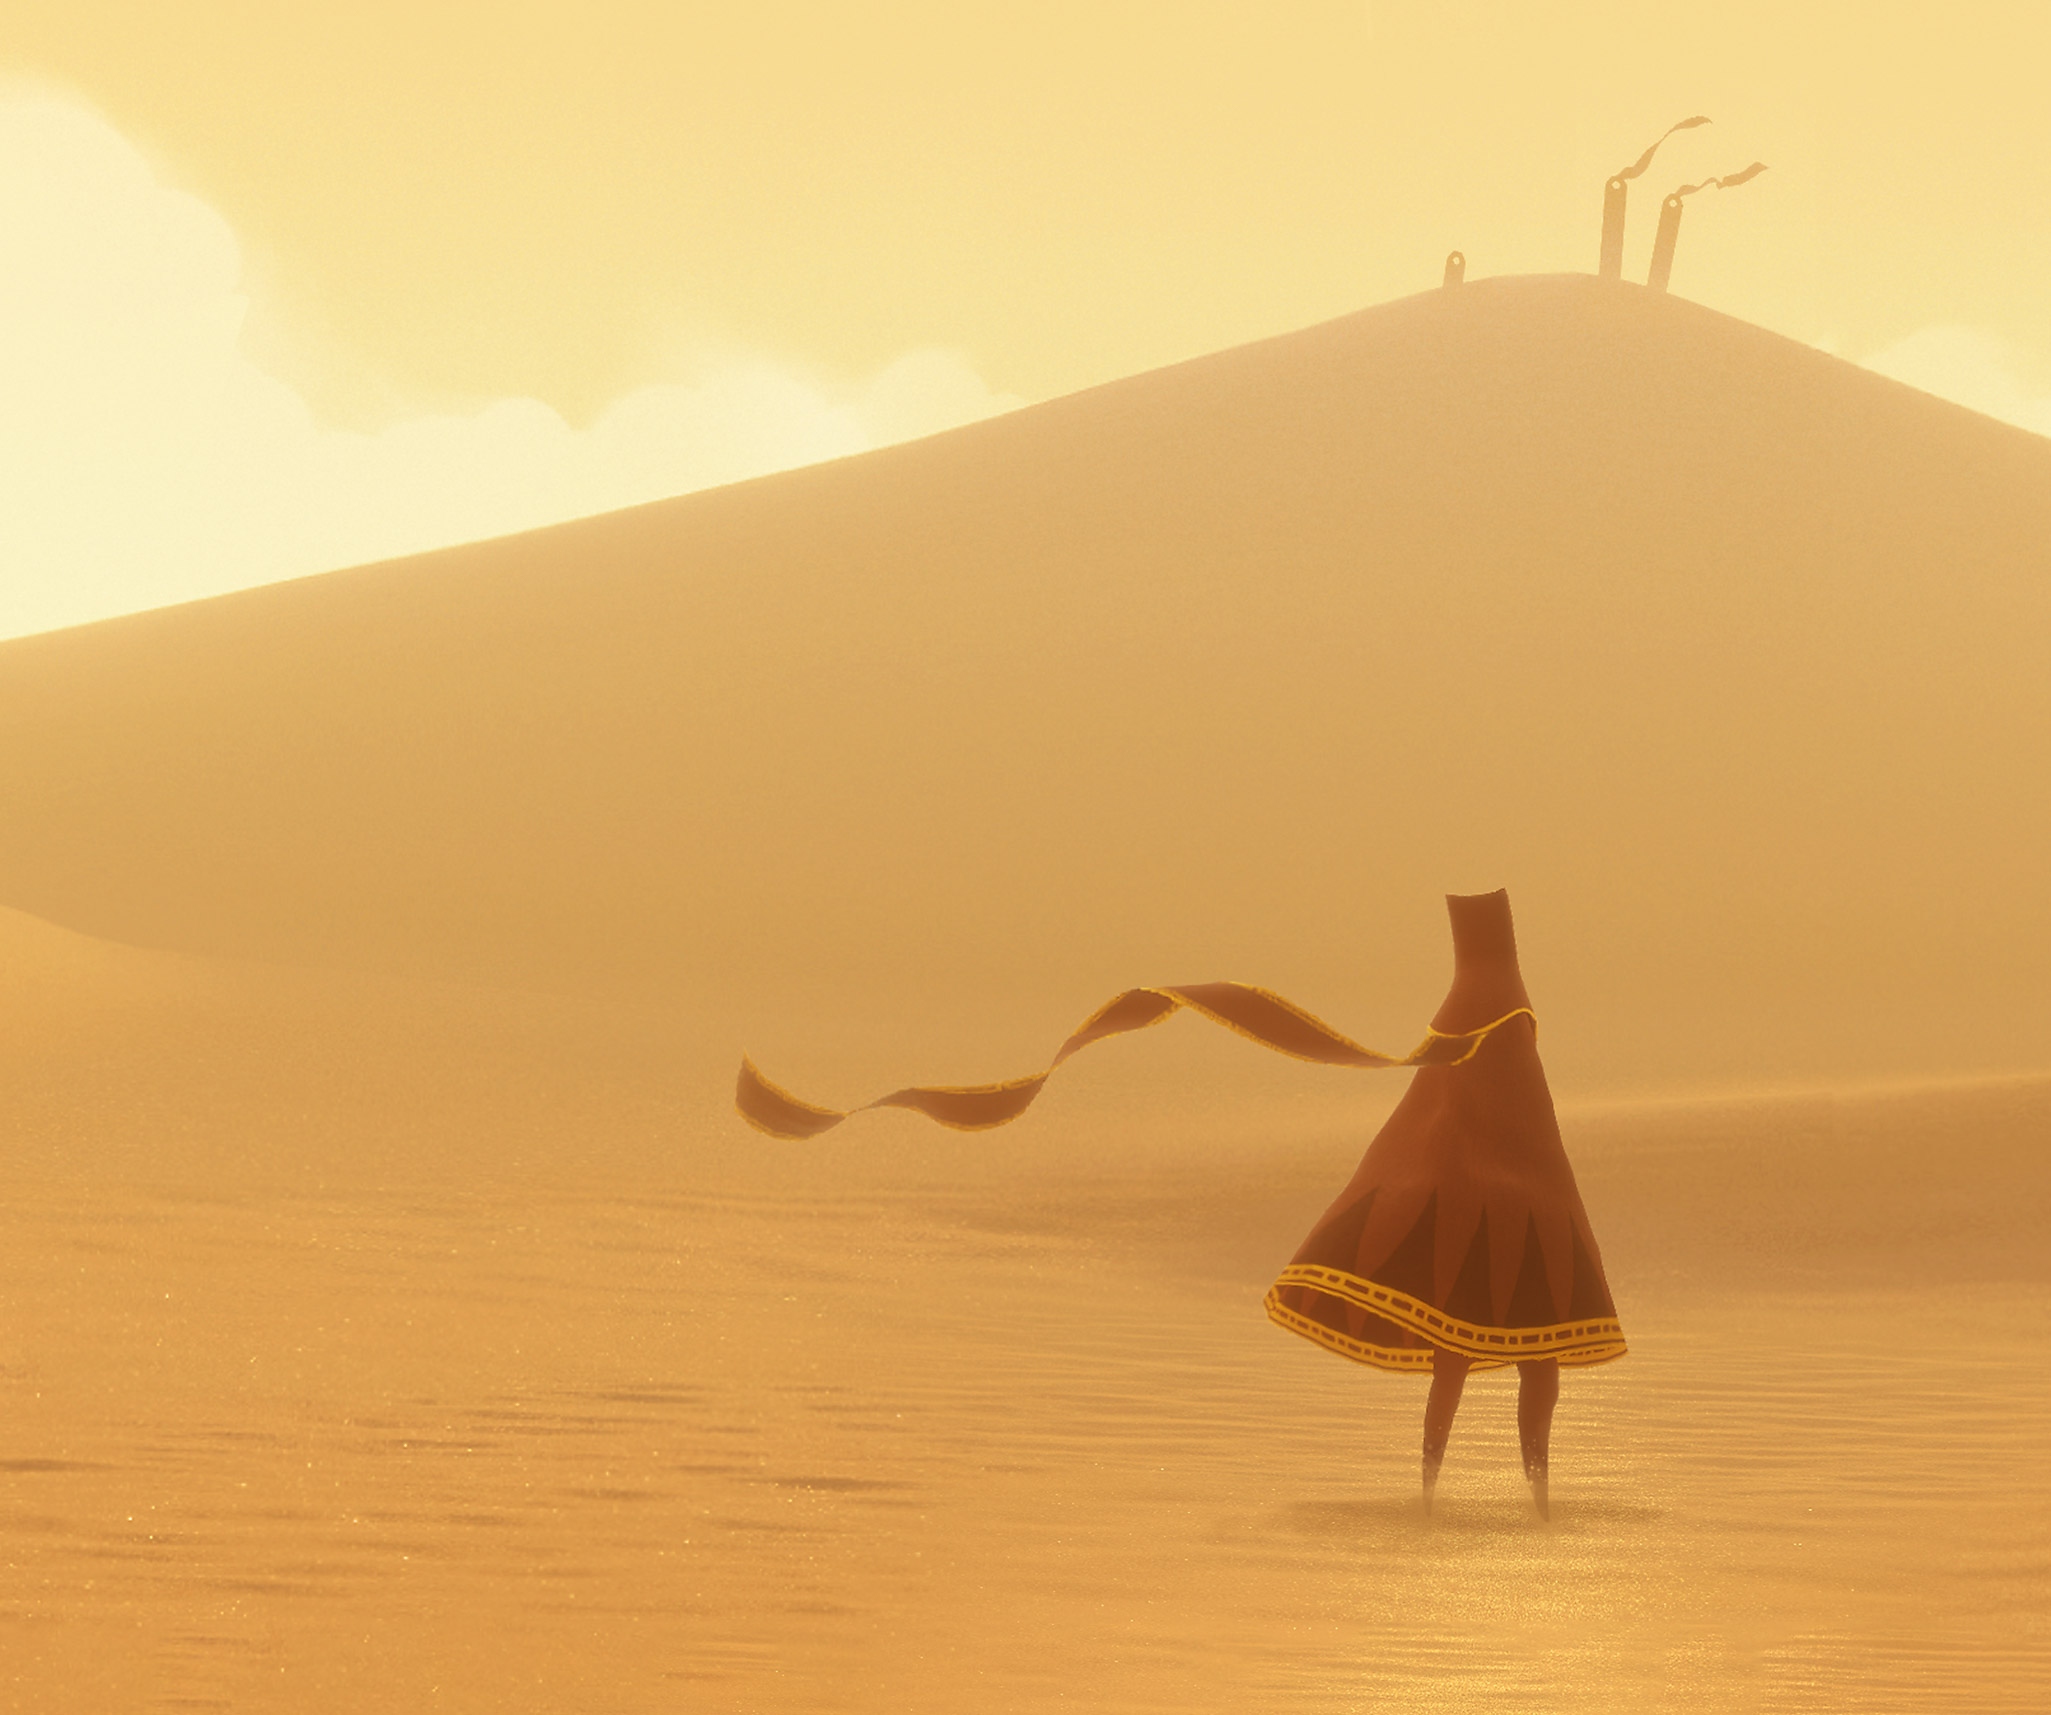 Journey-afbeelding van het hoofdpersonage 'The Traveller' in een uitgestrekte, zonovergoten woestijn.